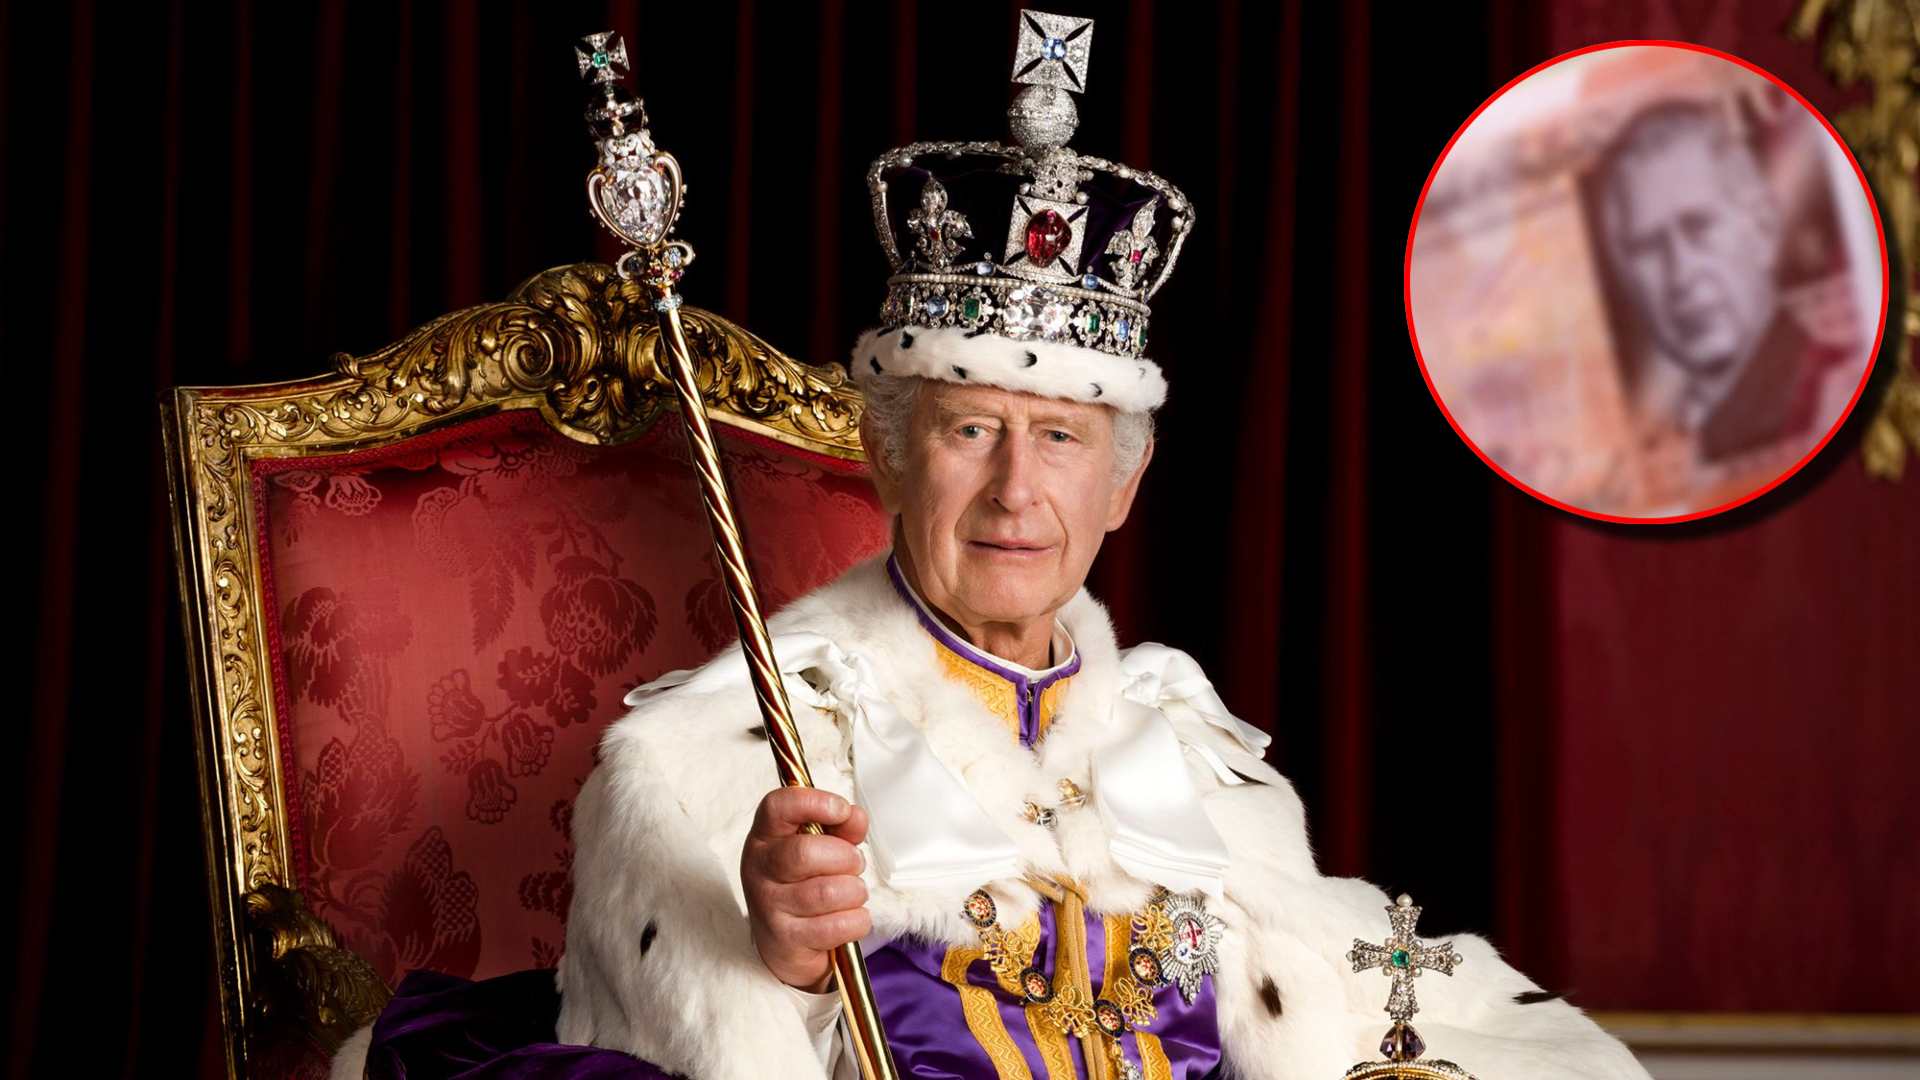 Billetes con la imagen del rey Carlos III entran en circulación en Reino Unido